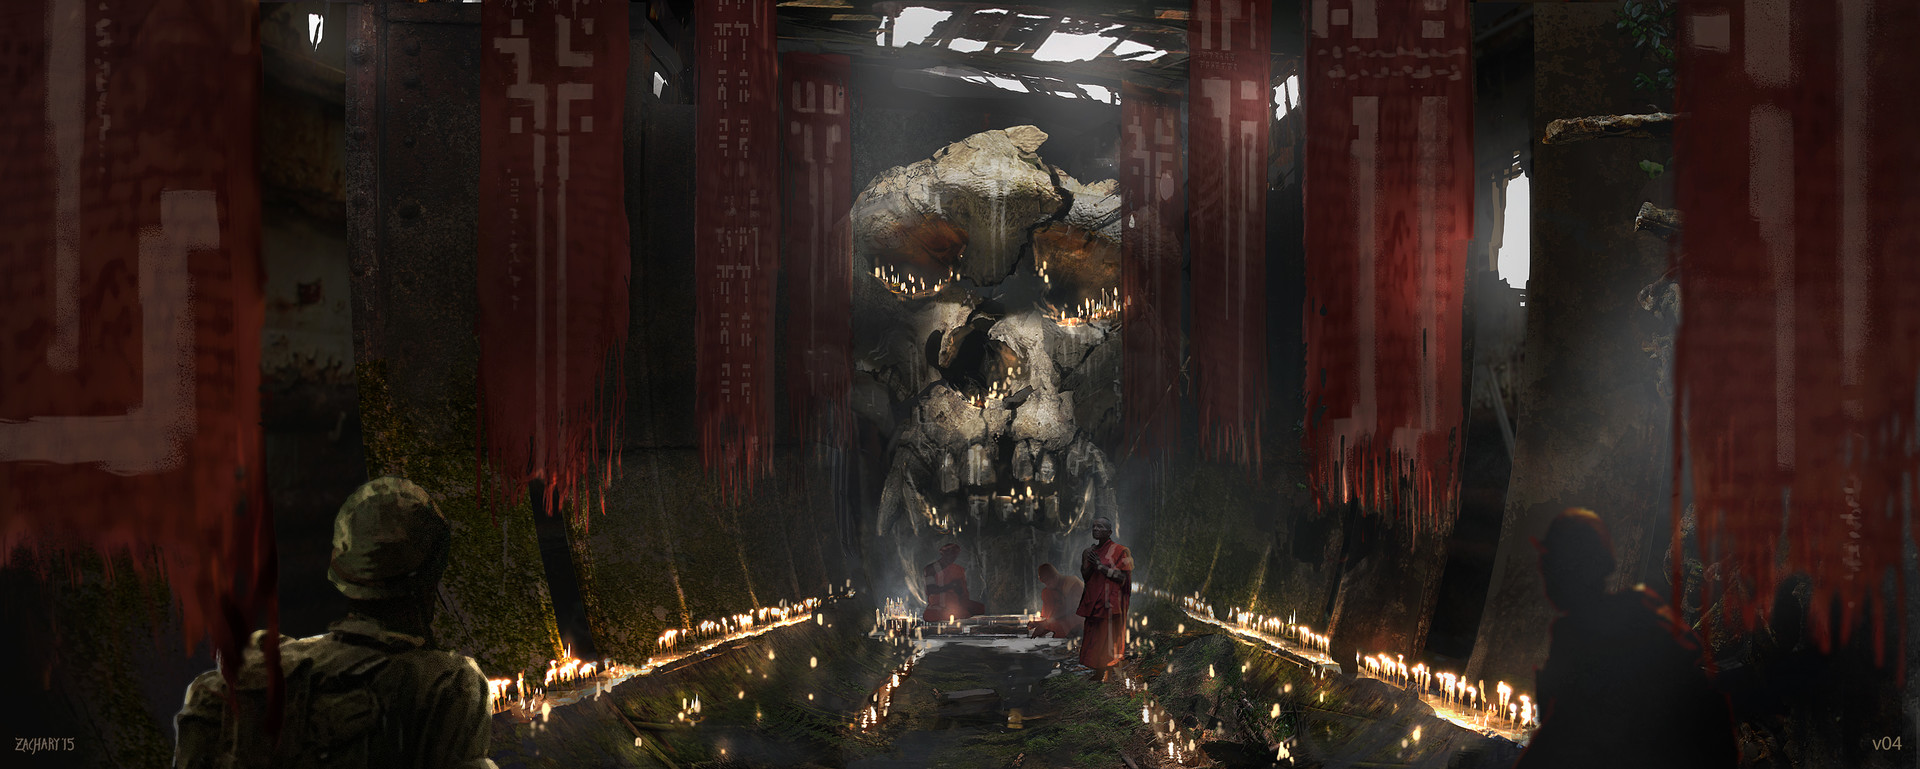 Kong: Skull Island Art